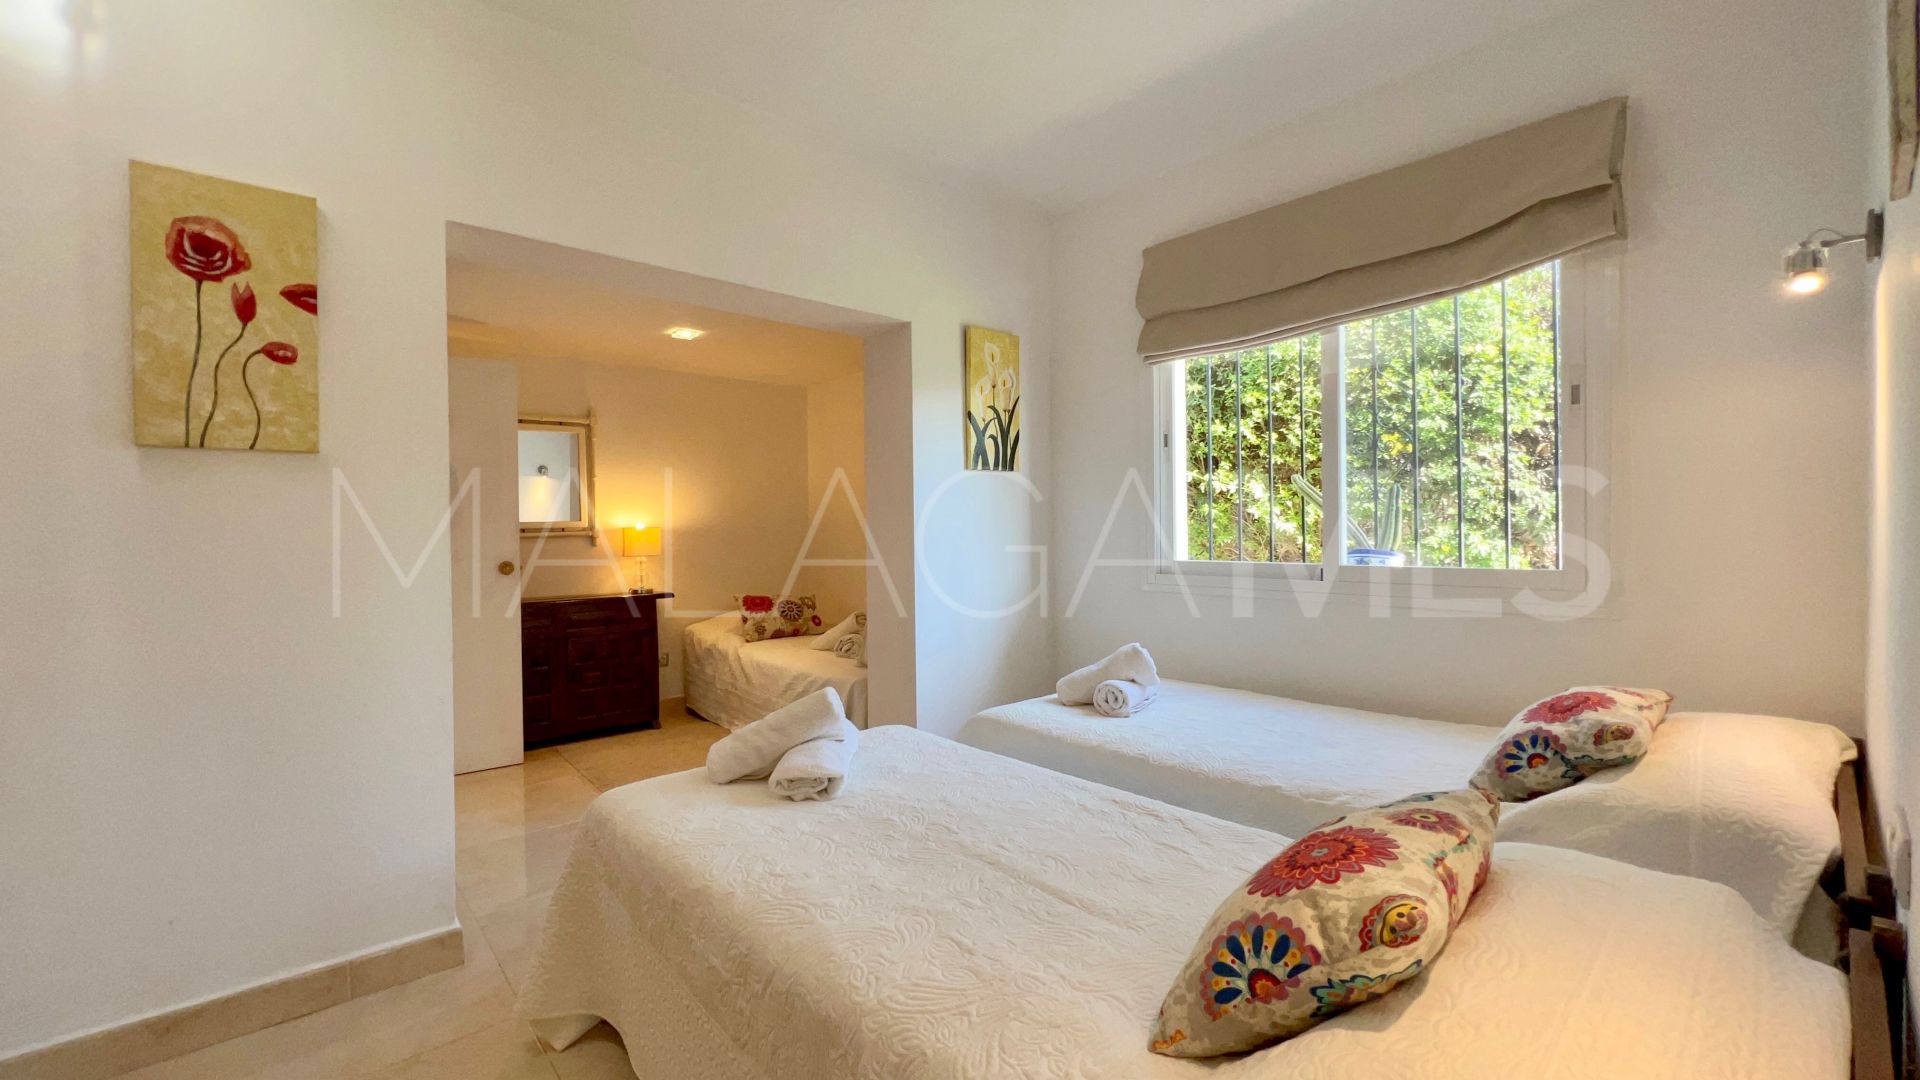 For sale villa in El Saladillo with 2 bedrooms